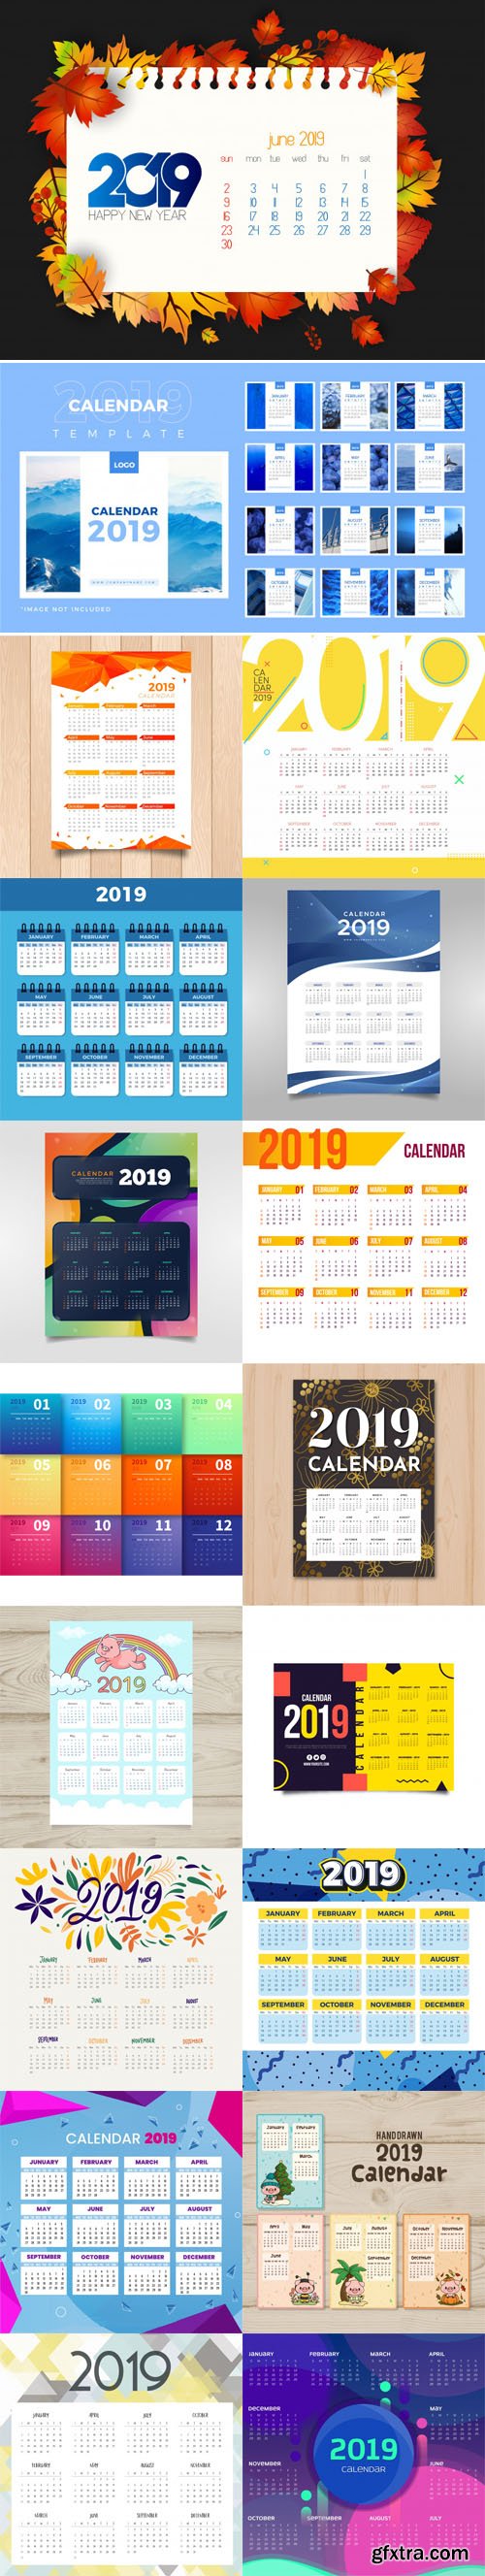 2019 Calendar Vector Templates Collection 5 [18 Calendars]